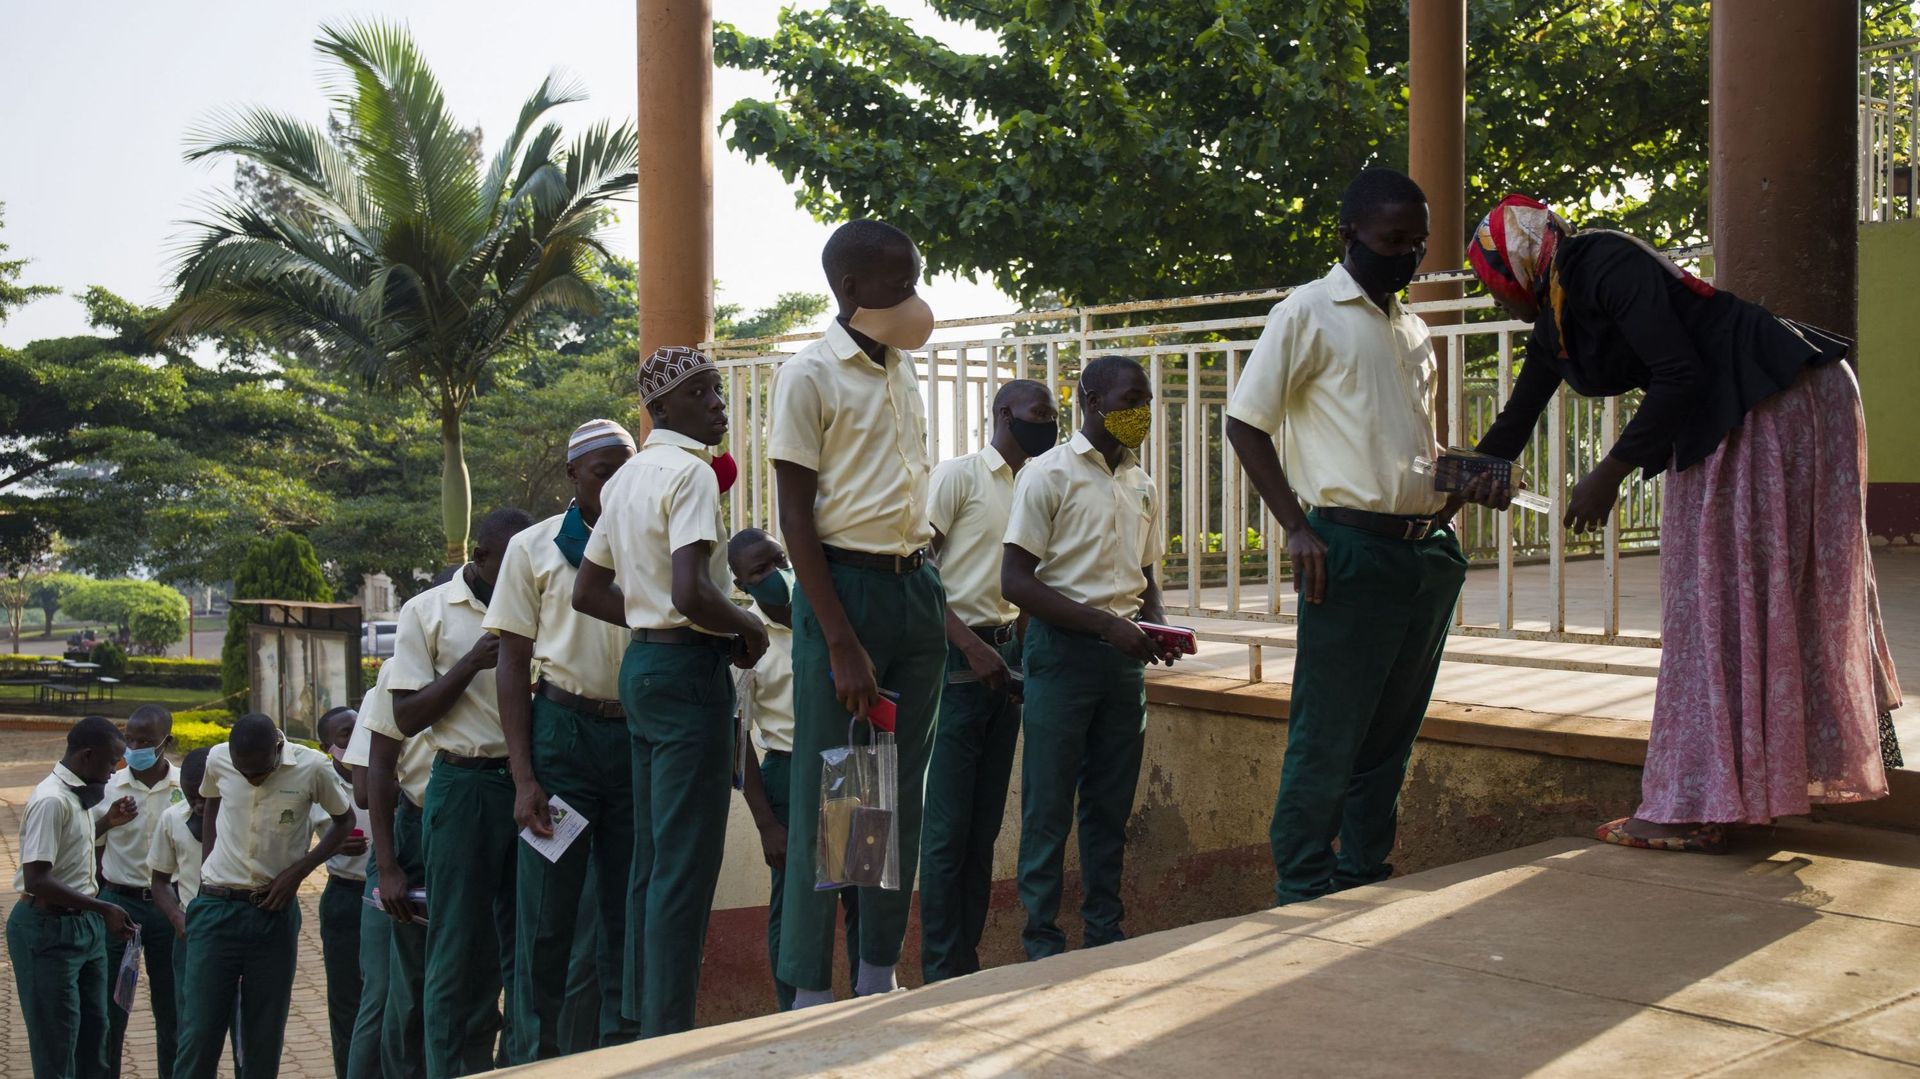 Des élèves de quatrième année de l’école secondaire mixte Mbogo font la queue pour l’inspection avant leurs examens finaux à Wakiso, le 1er mars 2021. Les élèves ont commencé leurs examens de fin d’année après que l’Ouganda a fermé toutes les écoles en ma